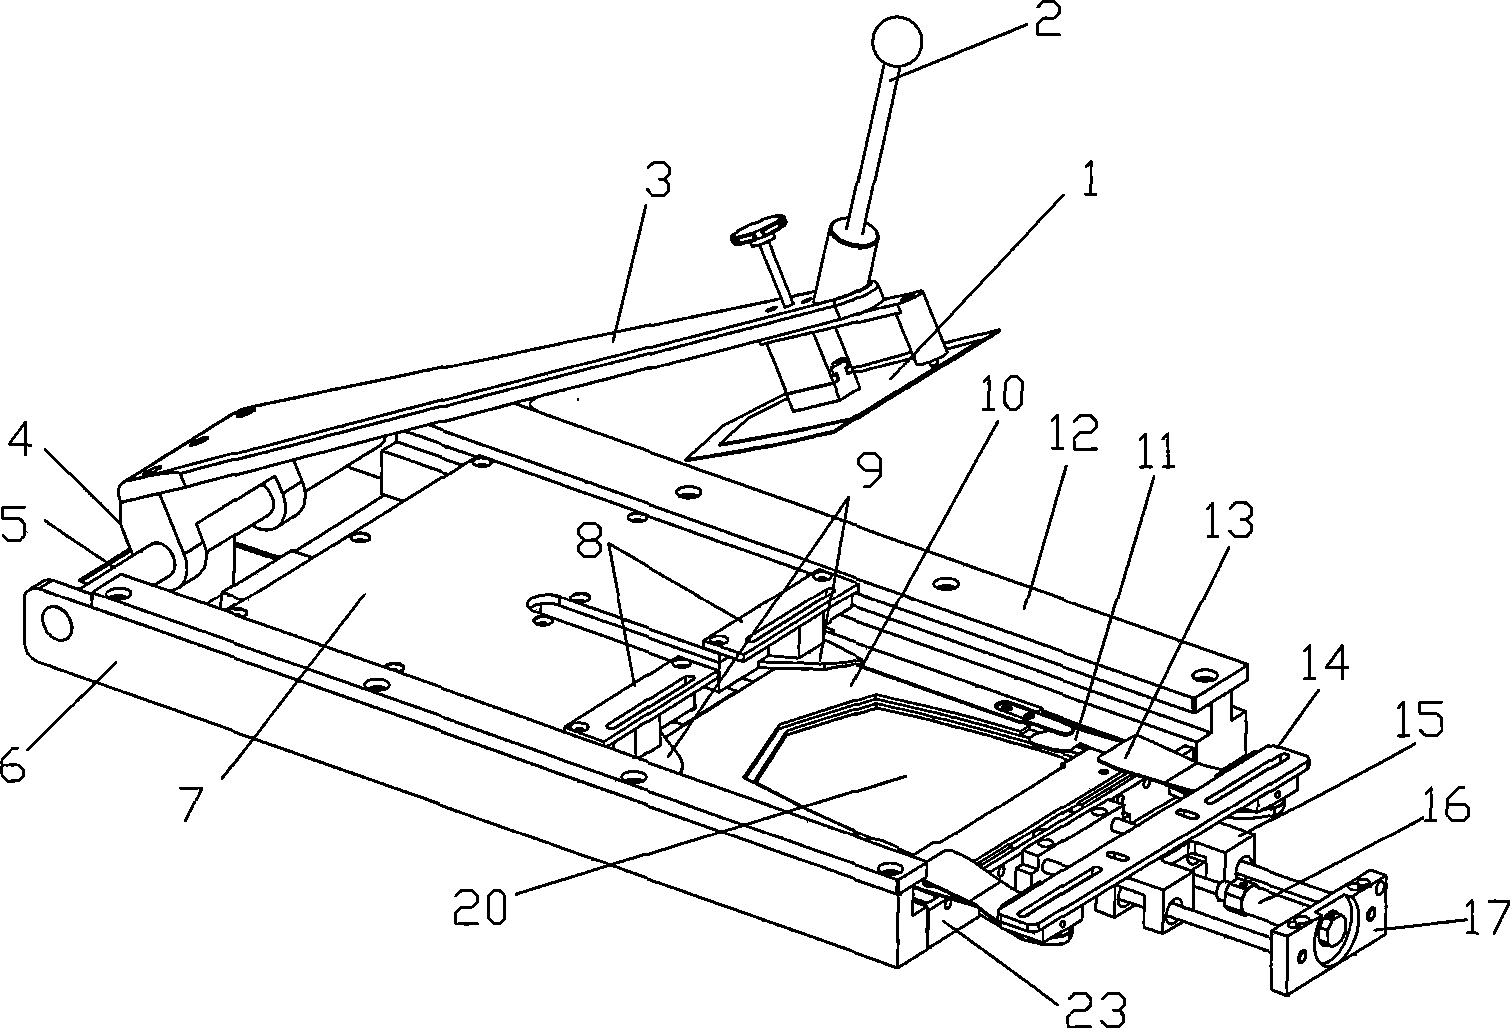 Automatic edge folding mechanism of whole ironing equipment